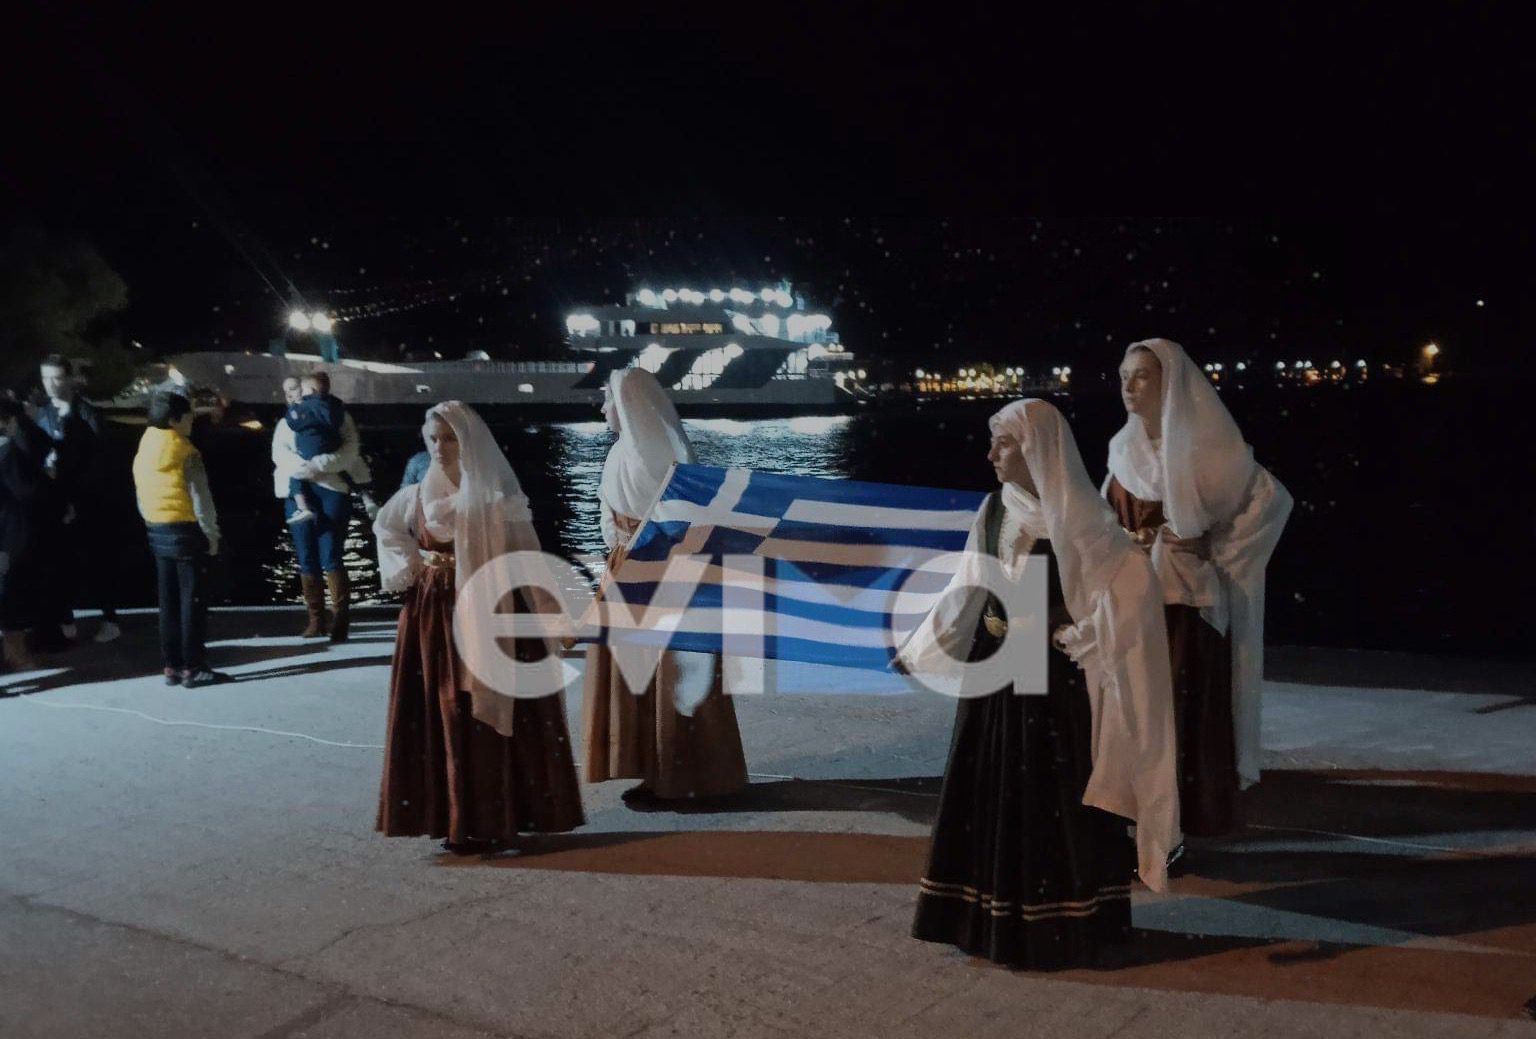 Εύβοια: Η Ερέτρια γιορτάζει τον Πολιούχο της Άγιο Νικόλαο (εικόνες&βίντεο)